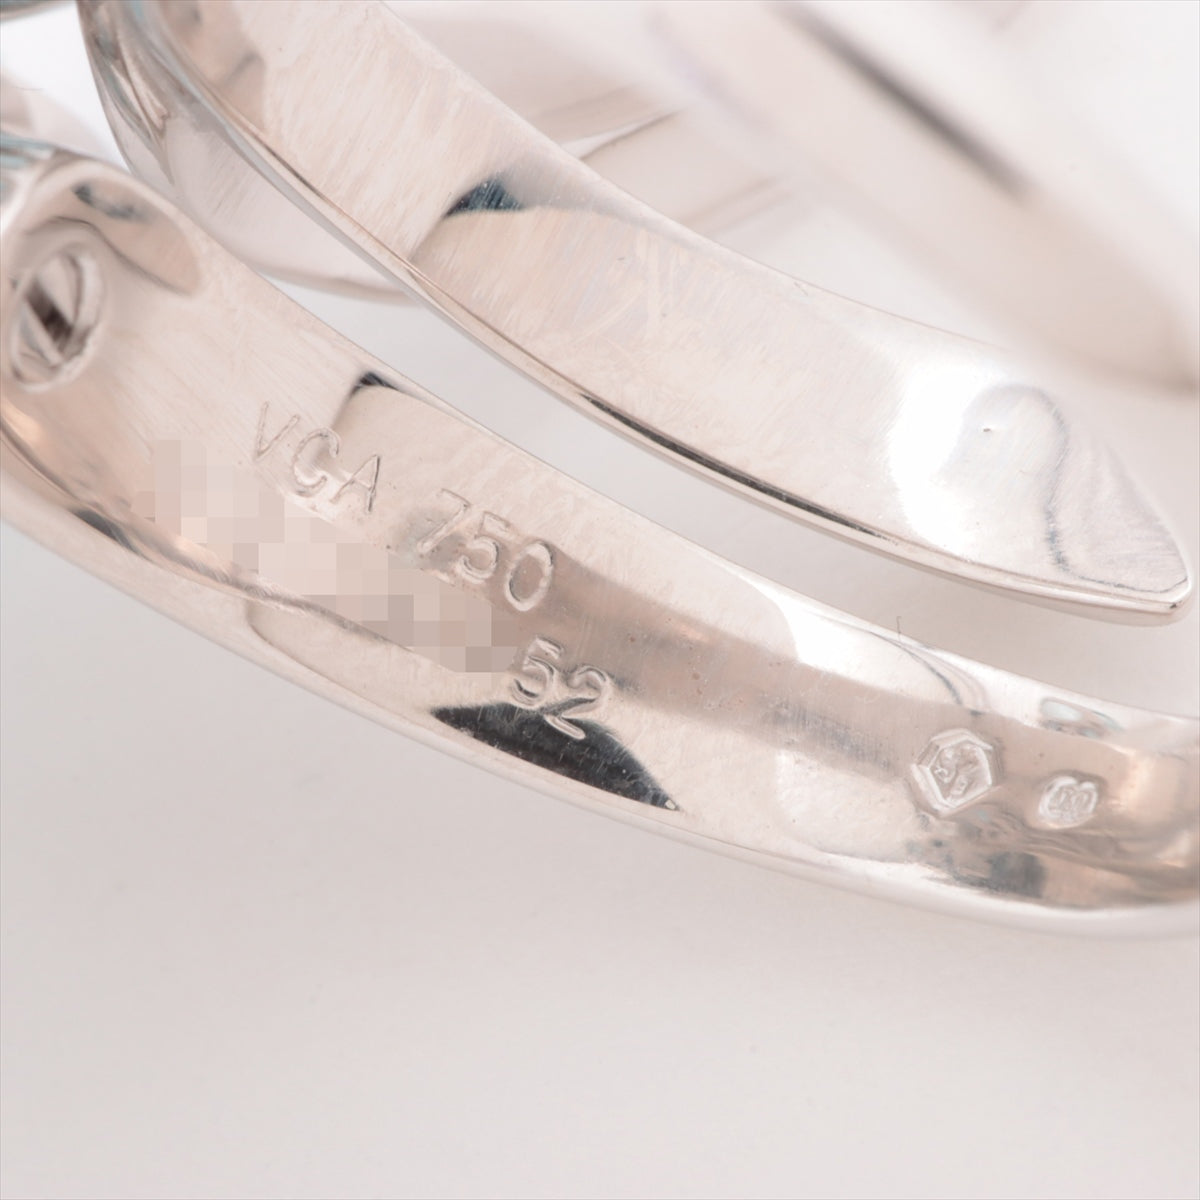 Van Cleef & Arpels Hawaiian Aquamarine Diamond Ring 750(WG) 15.1g 52